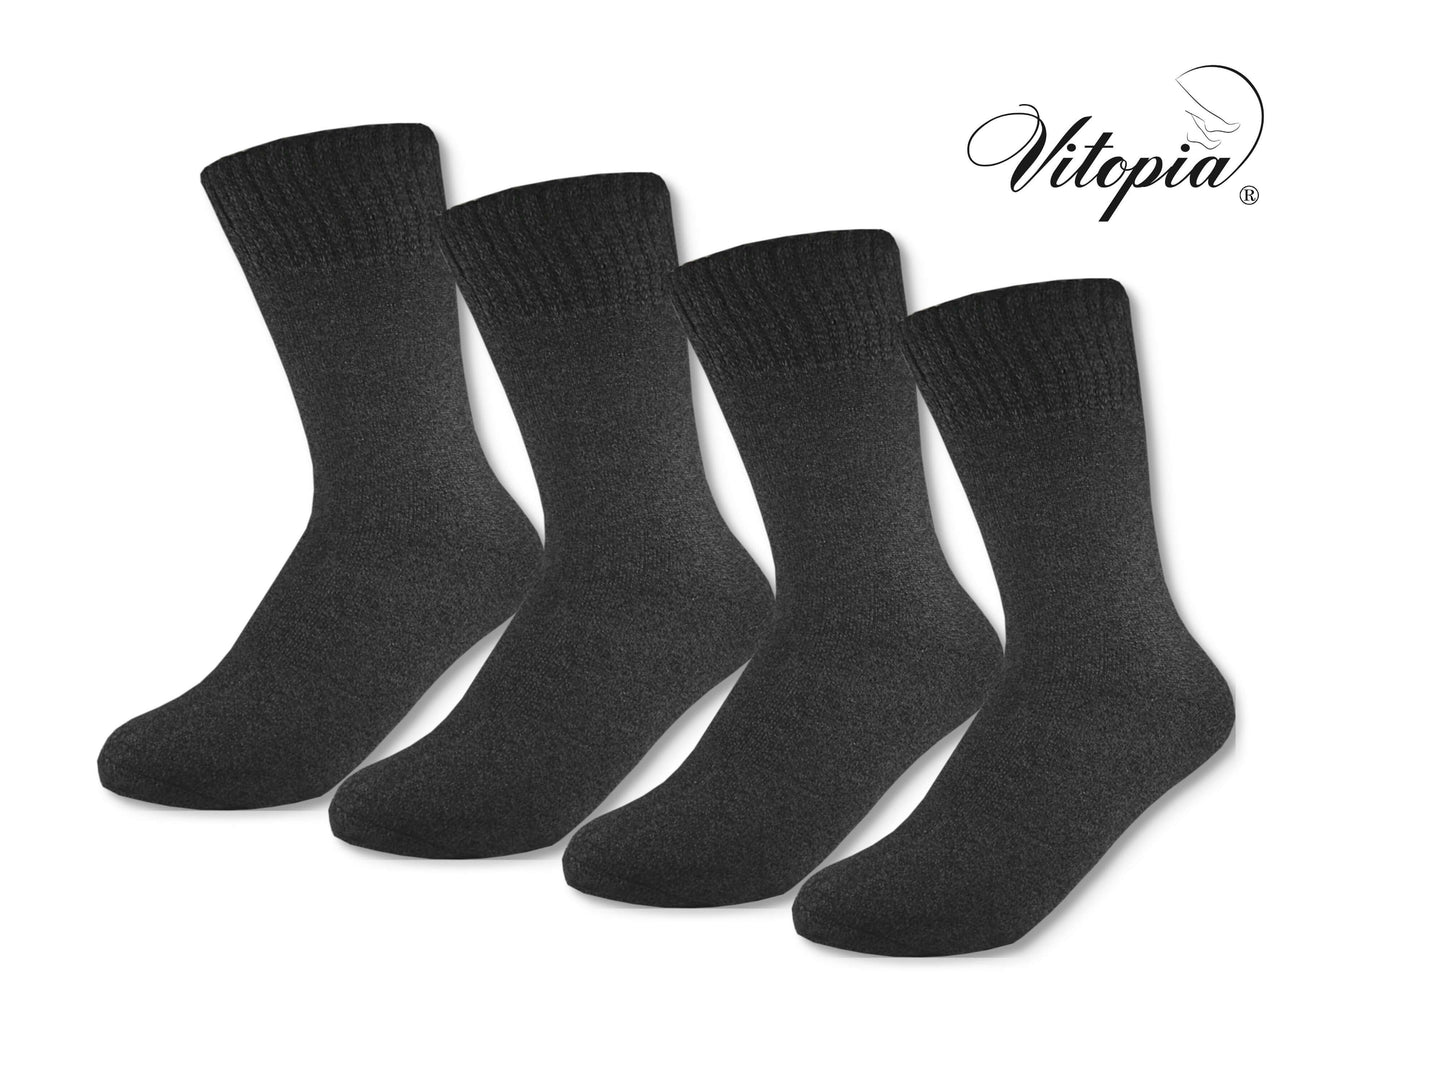 Baumw | Paar | Herren Winter-Socken | Vitopia® und | – extra warm 4 dick